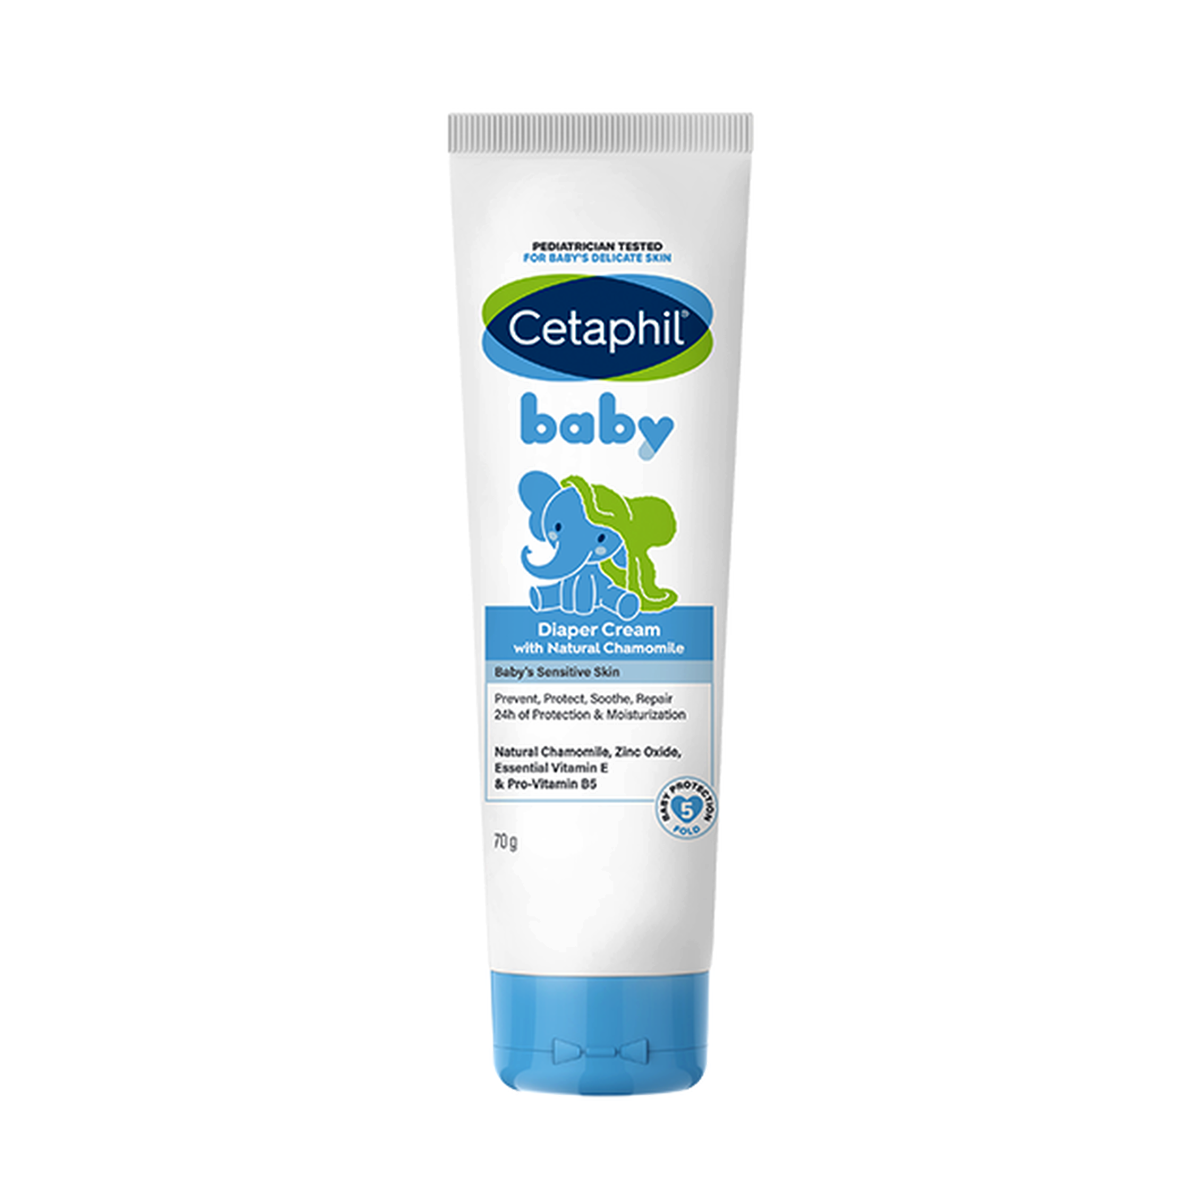 Cetaphil Baby Diaper Cream 70g